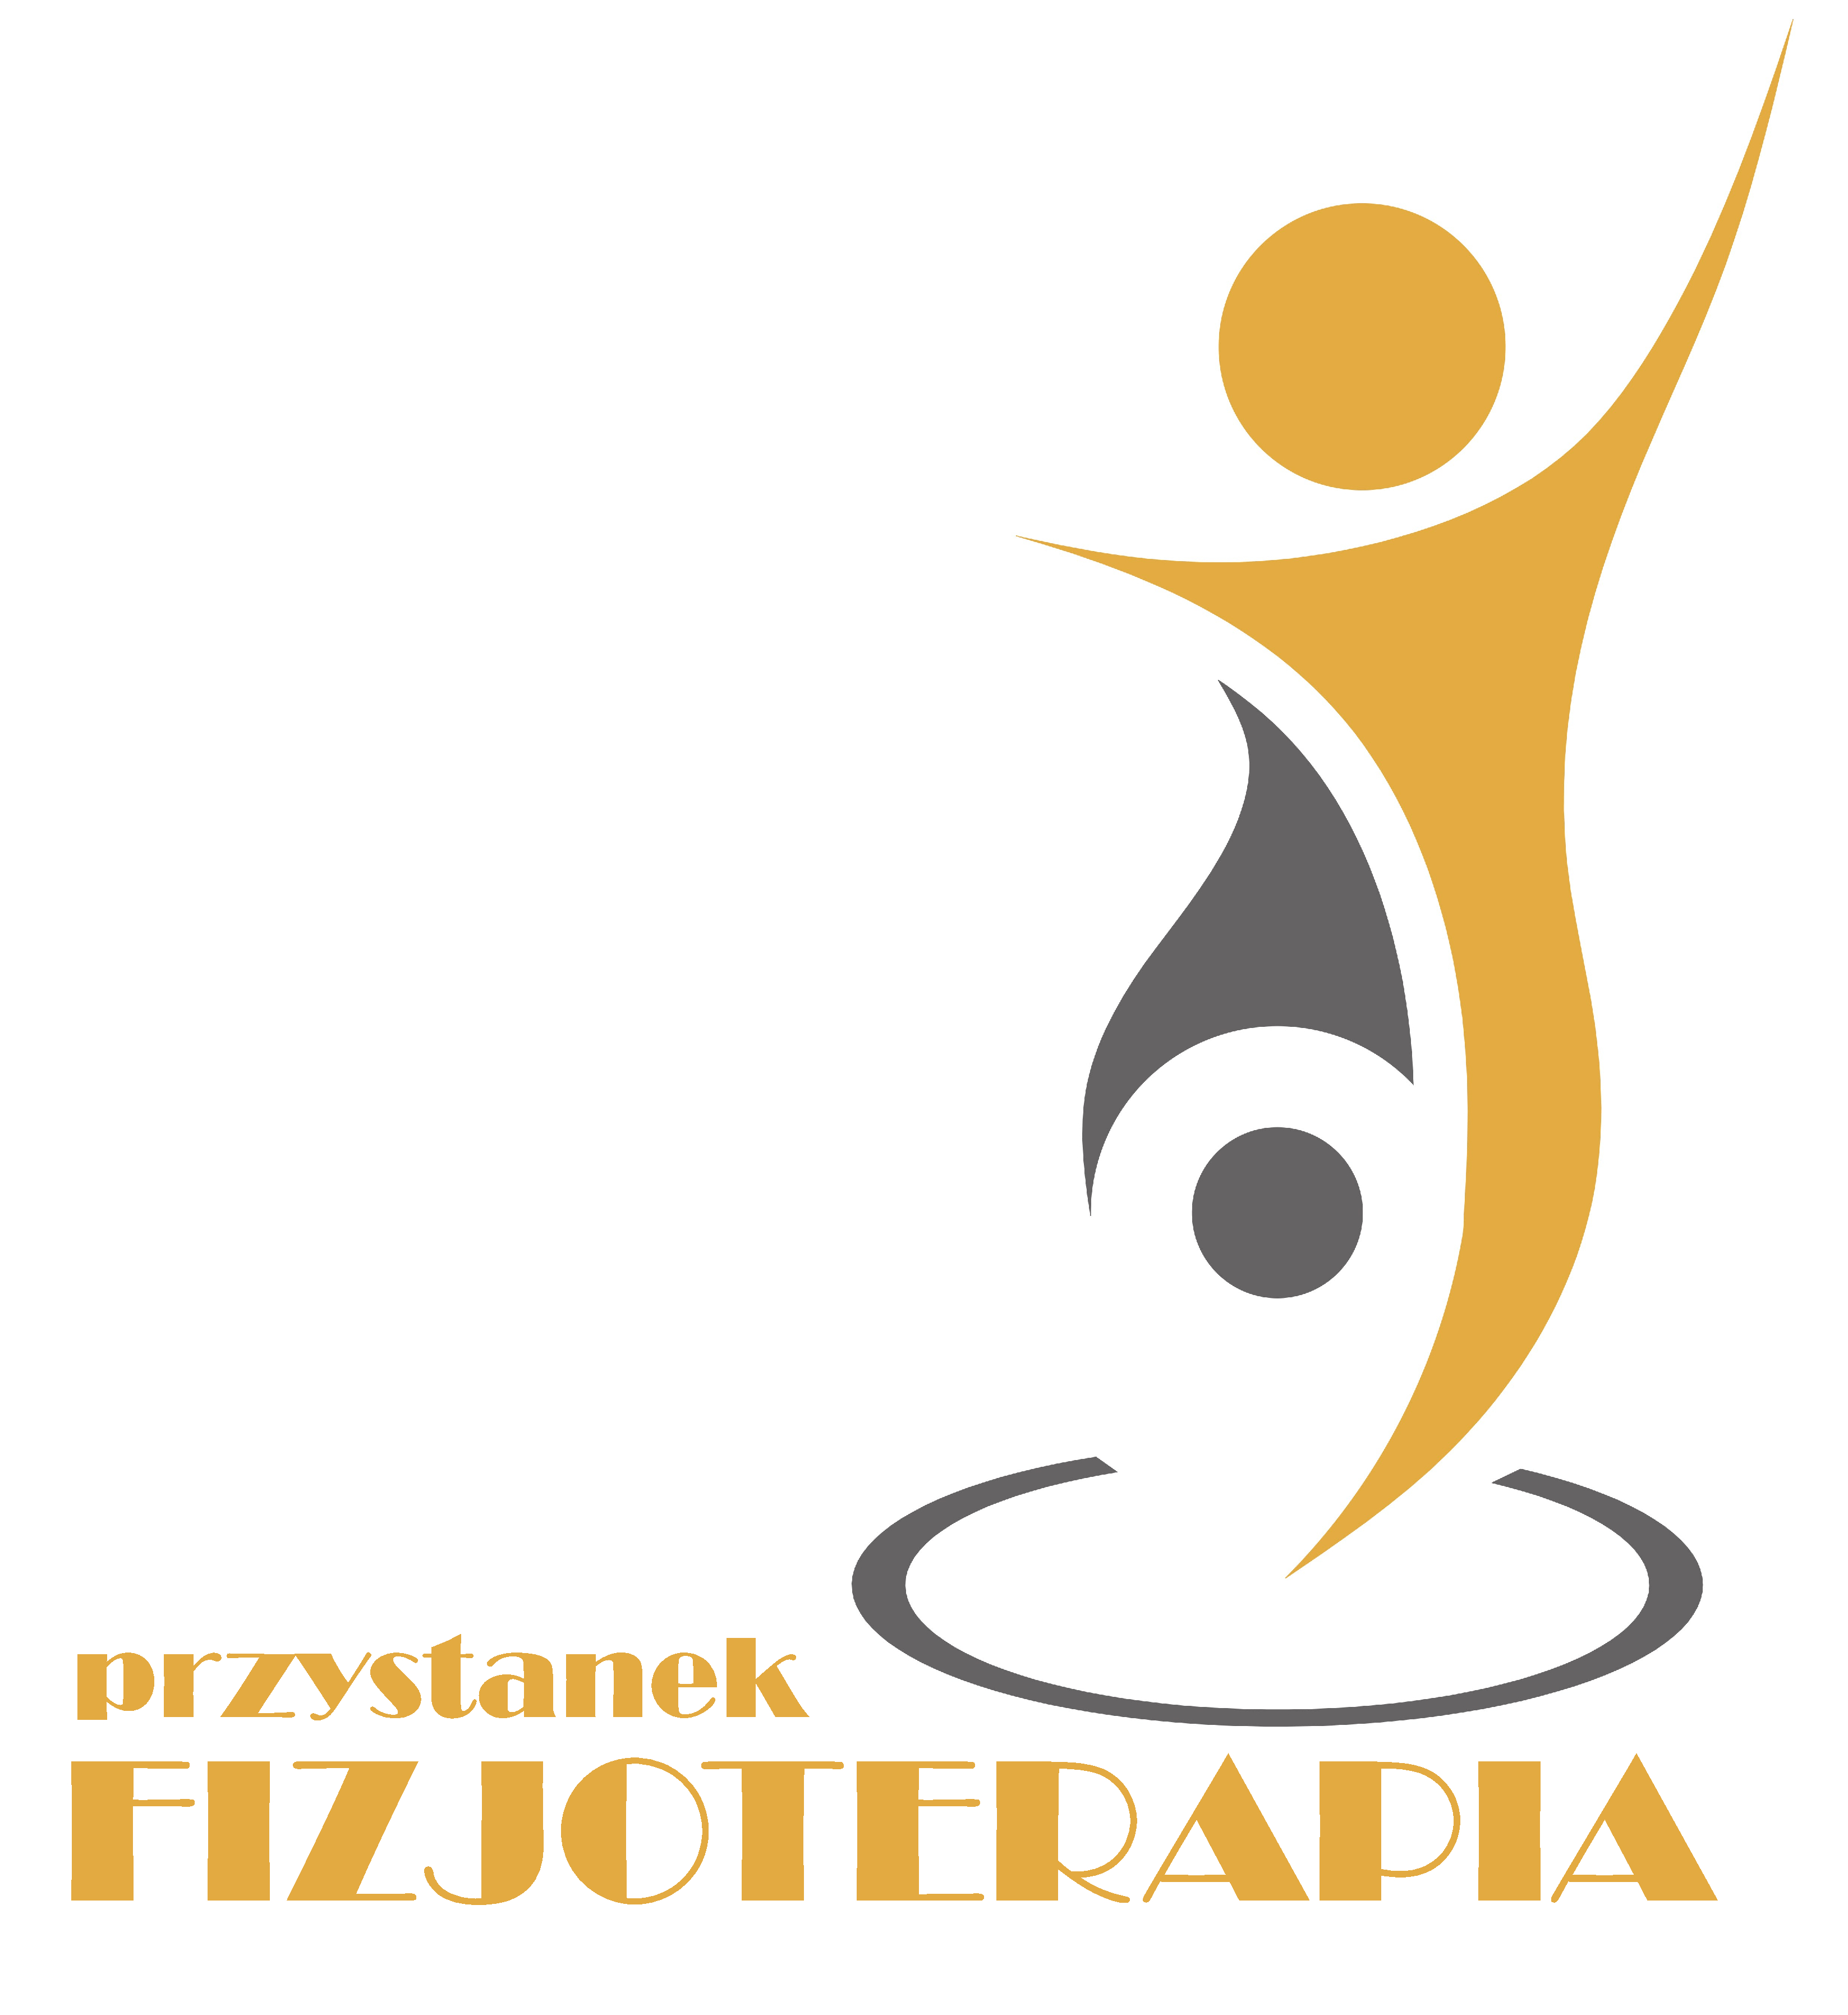 Przystanek Fizjoterapia logo